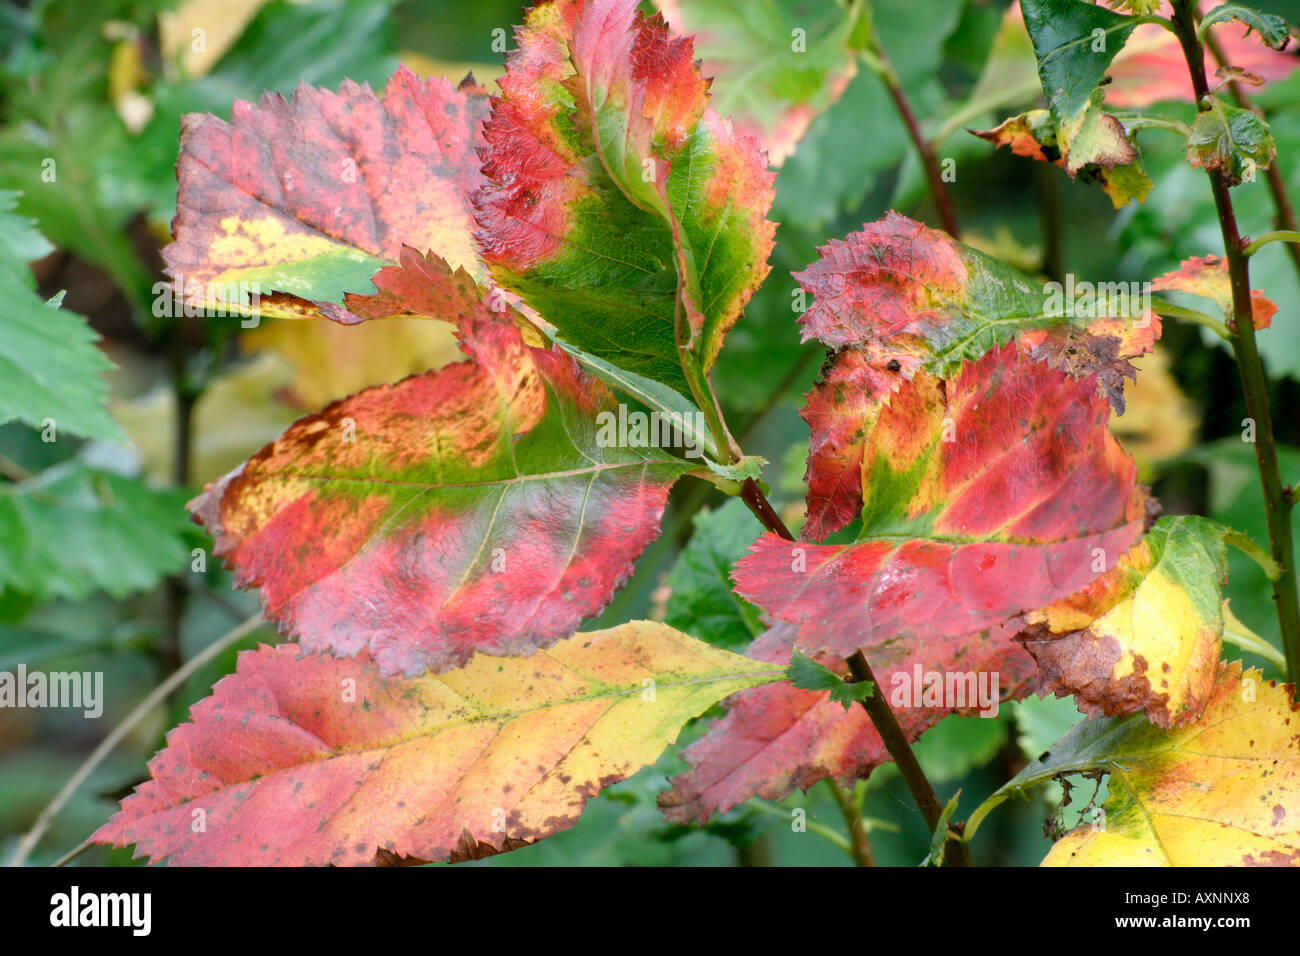 Crataegus persimilis Prunifola autumn foliage Stock Photo